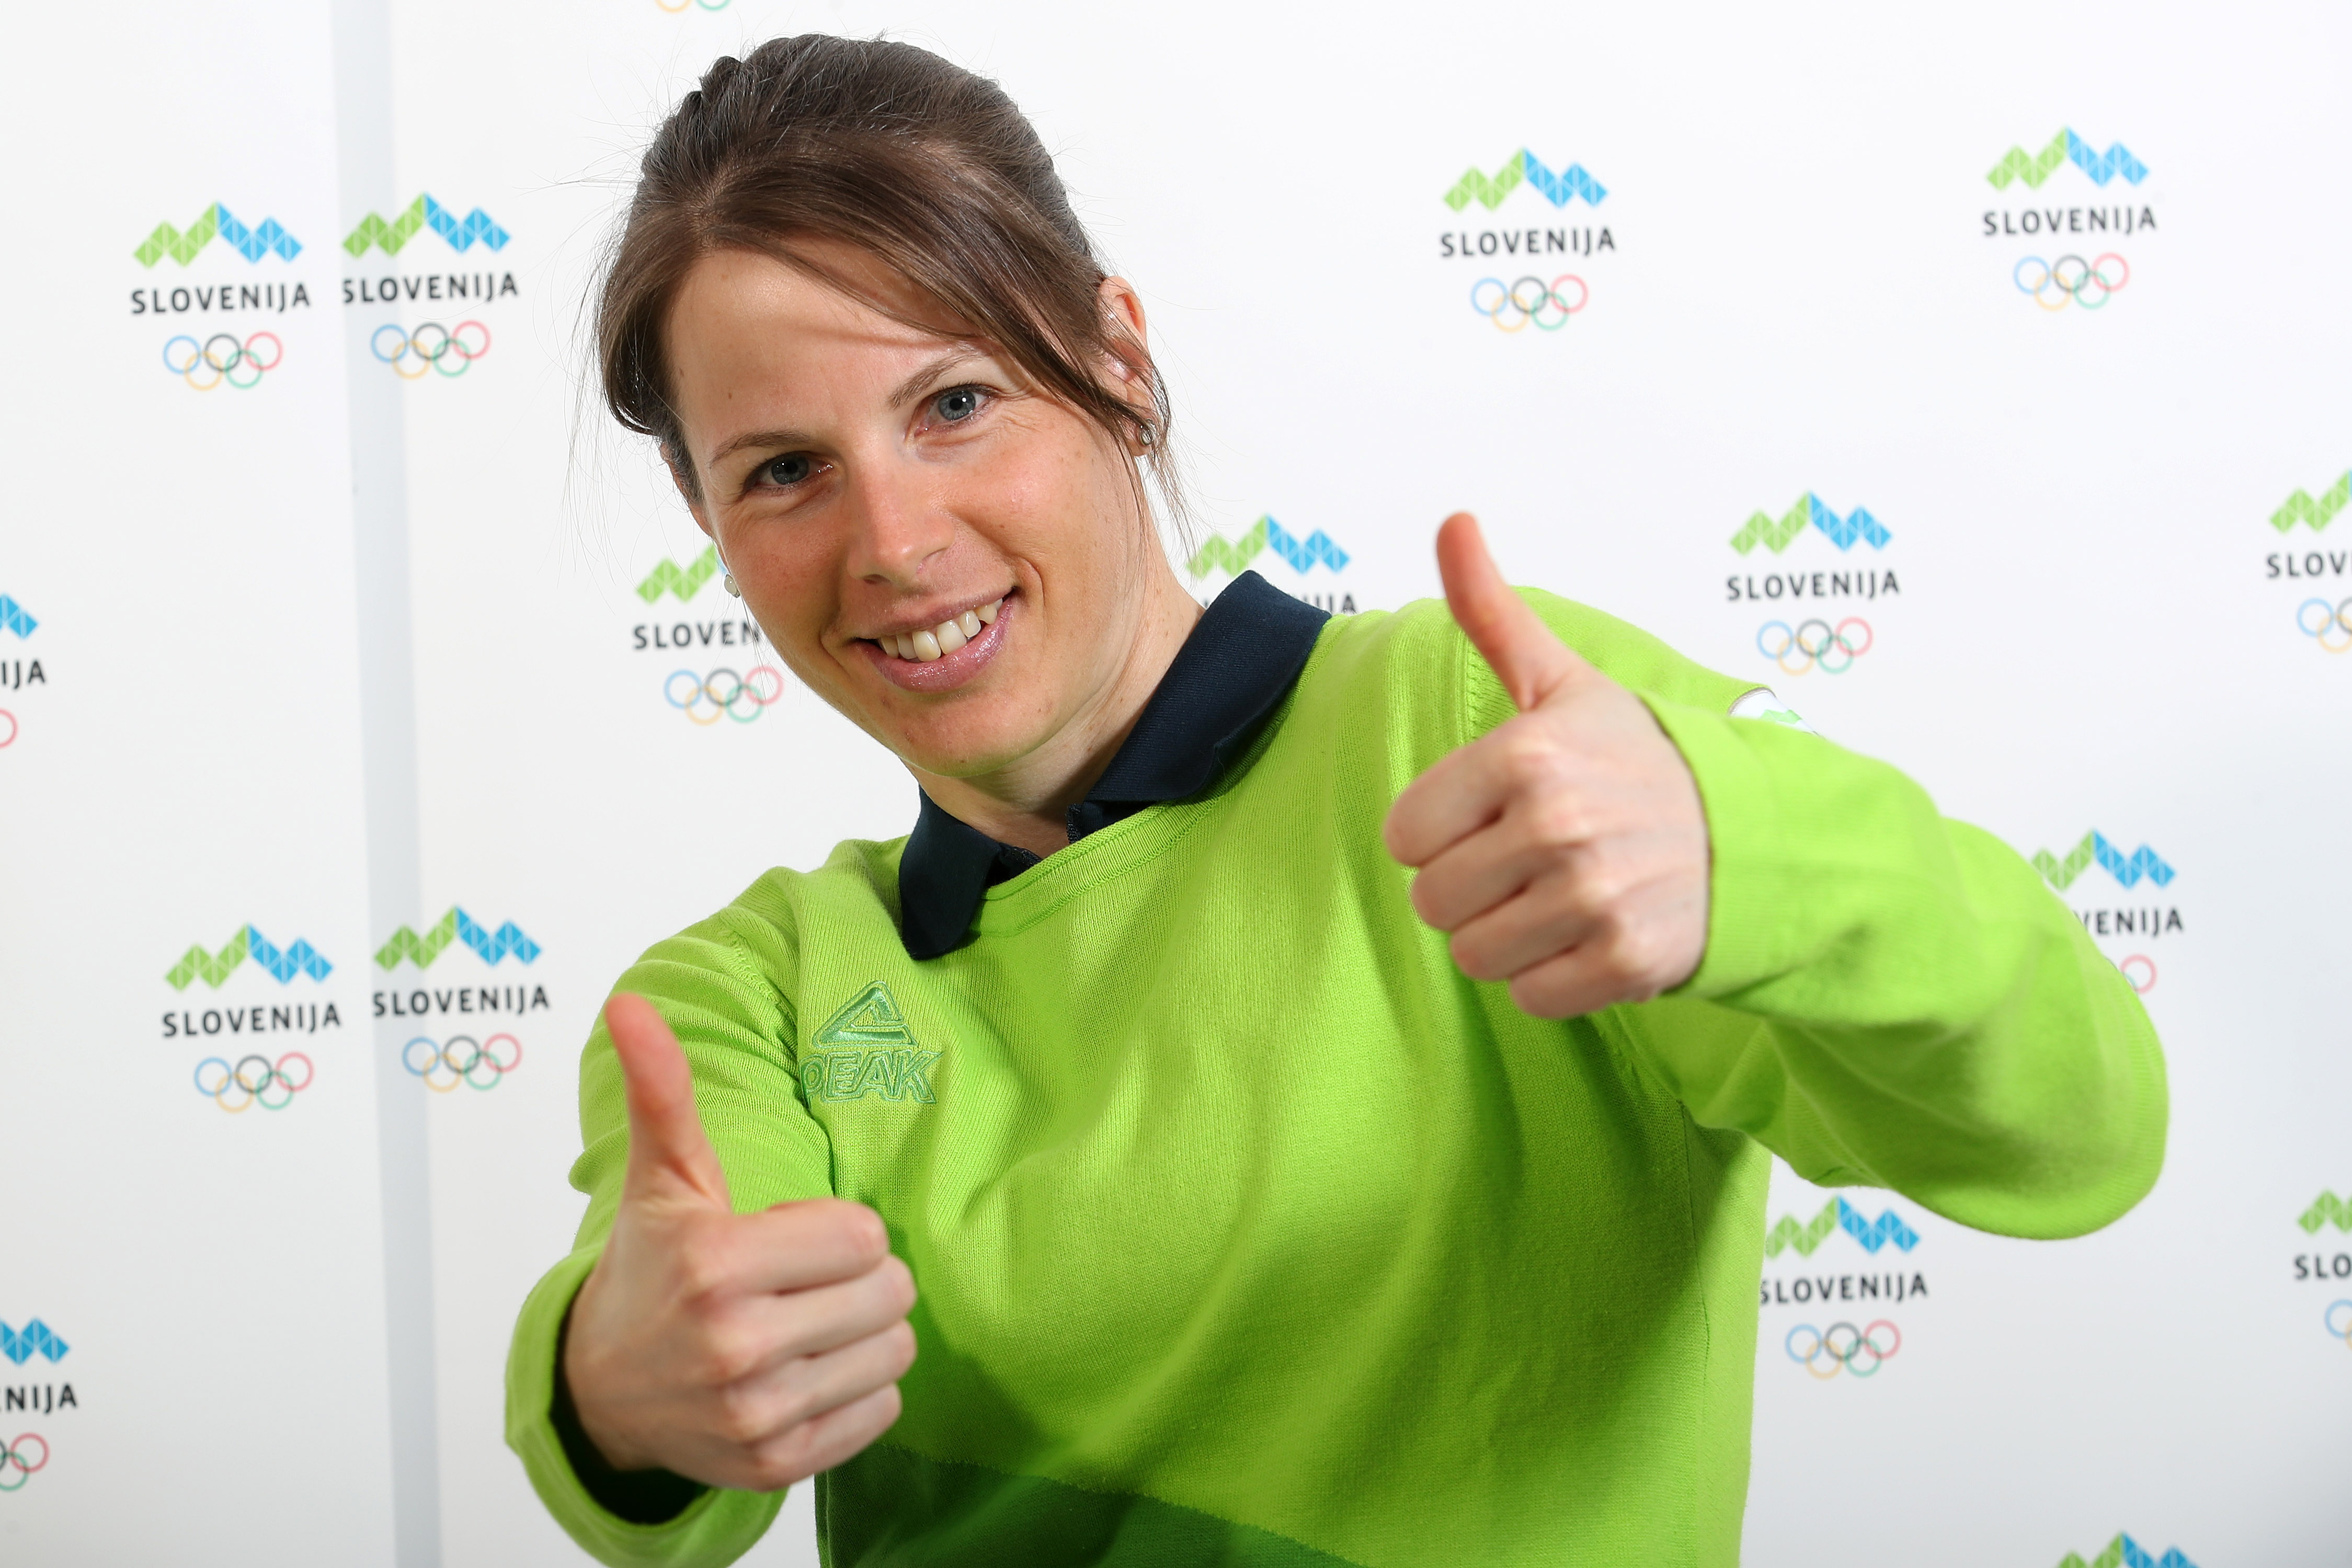 Olimpijska reprezentanca Slovenije za Pjongčang se predstavi